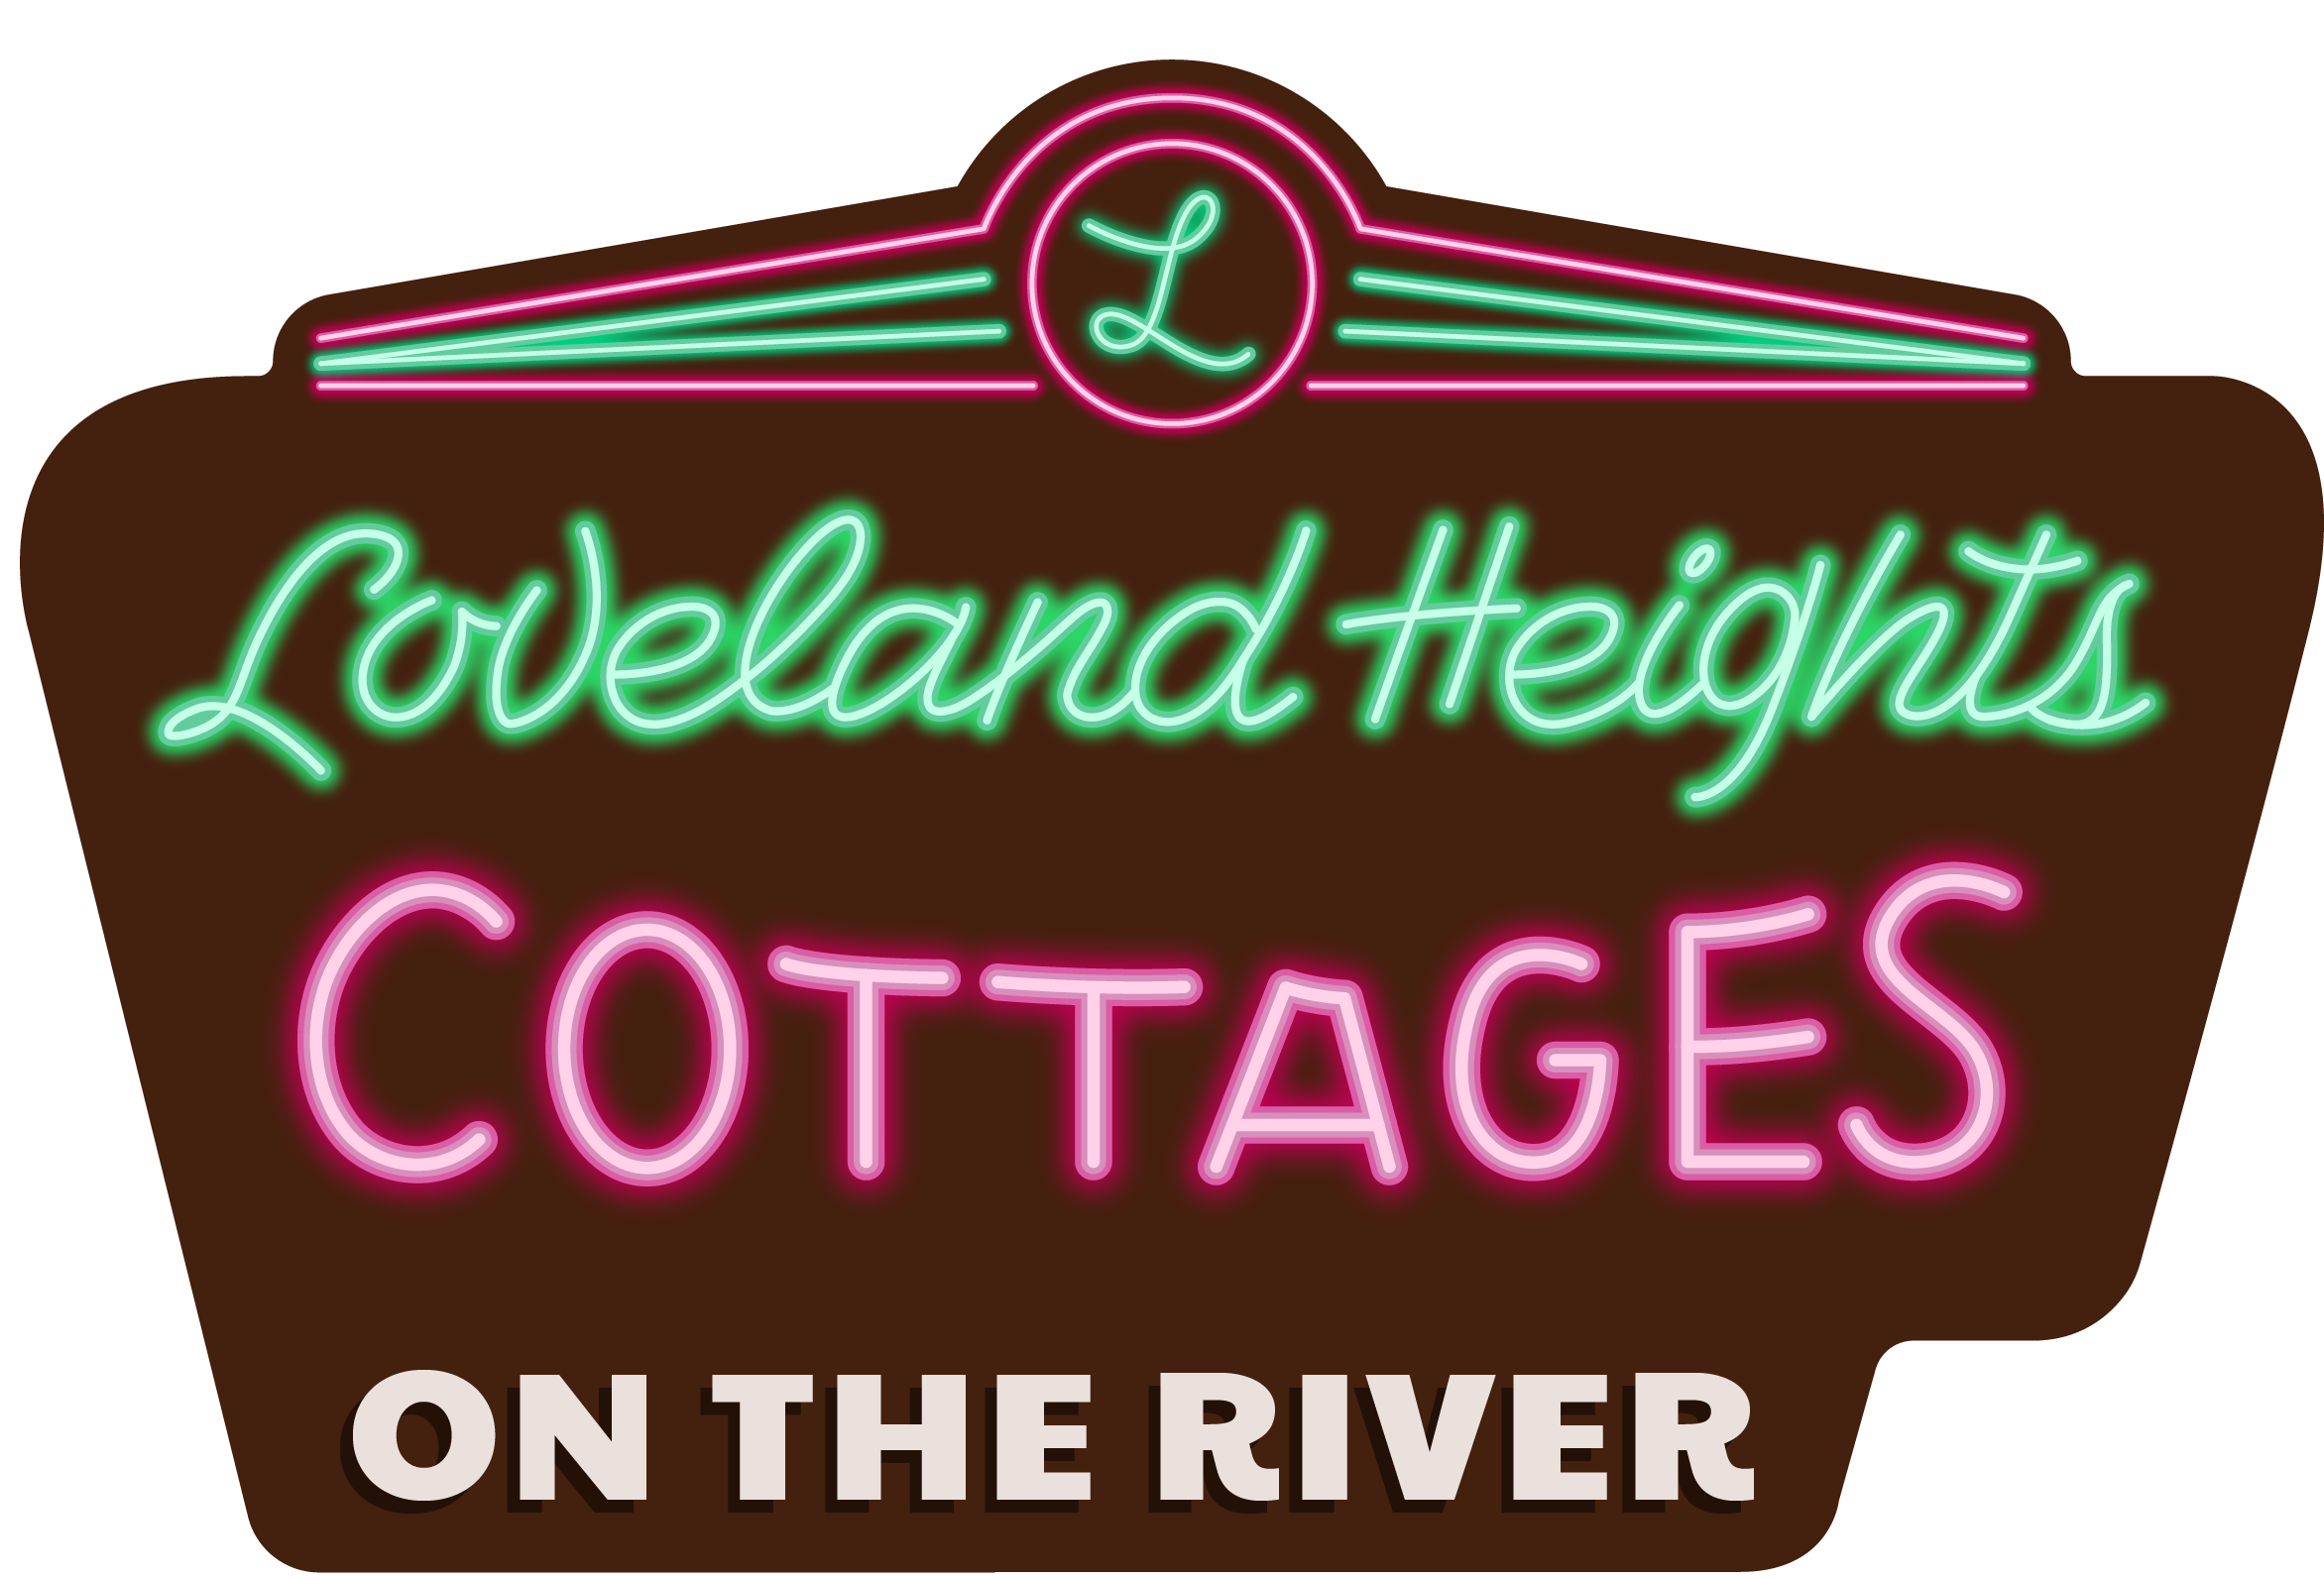 Loveland Heights Cottages Logo